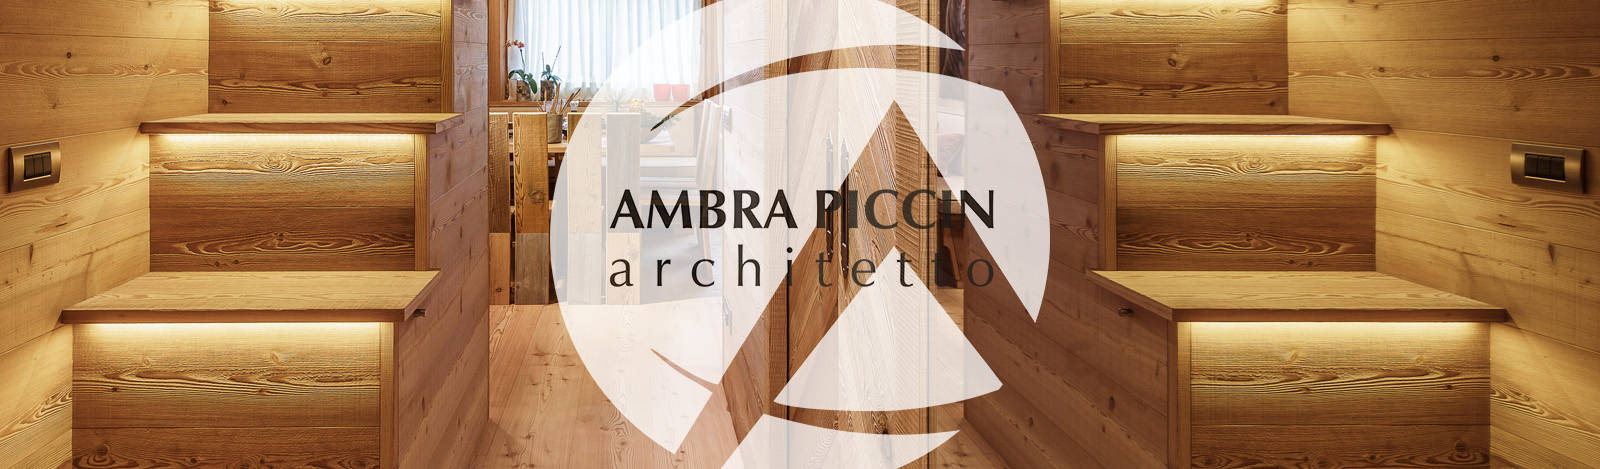 Ambra Piccin Architetto